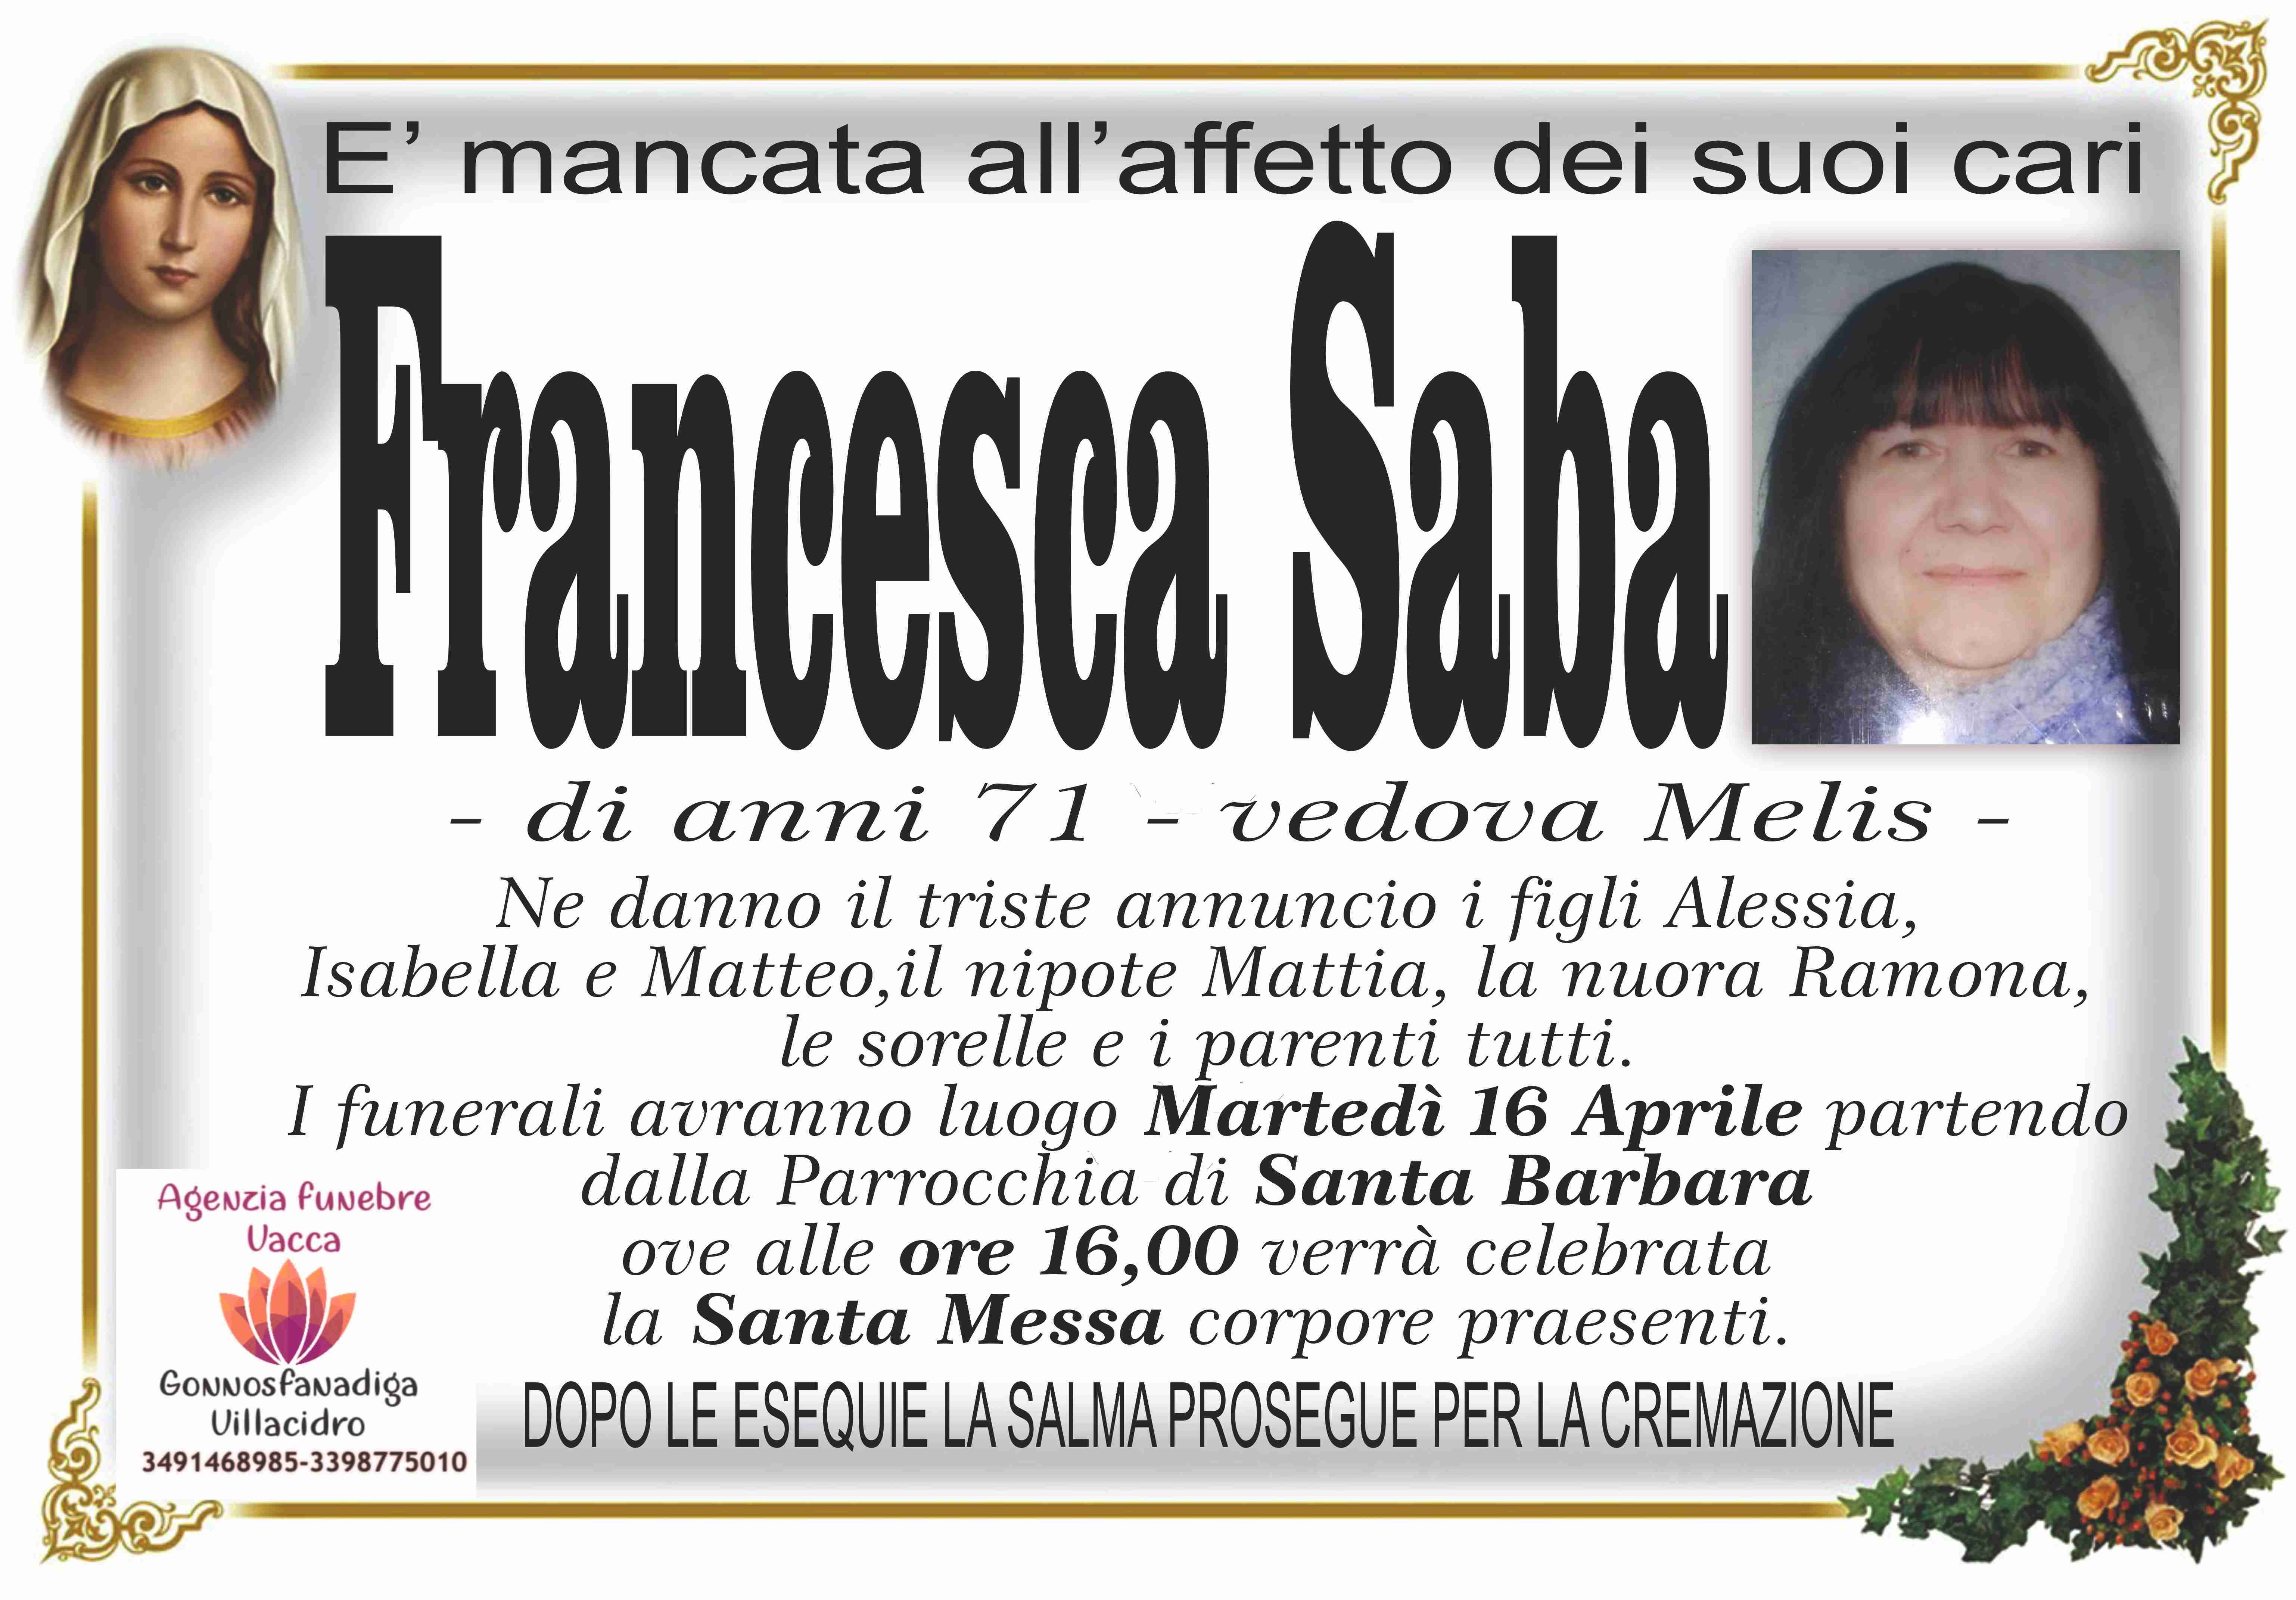 Francesca Saba